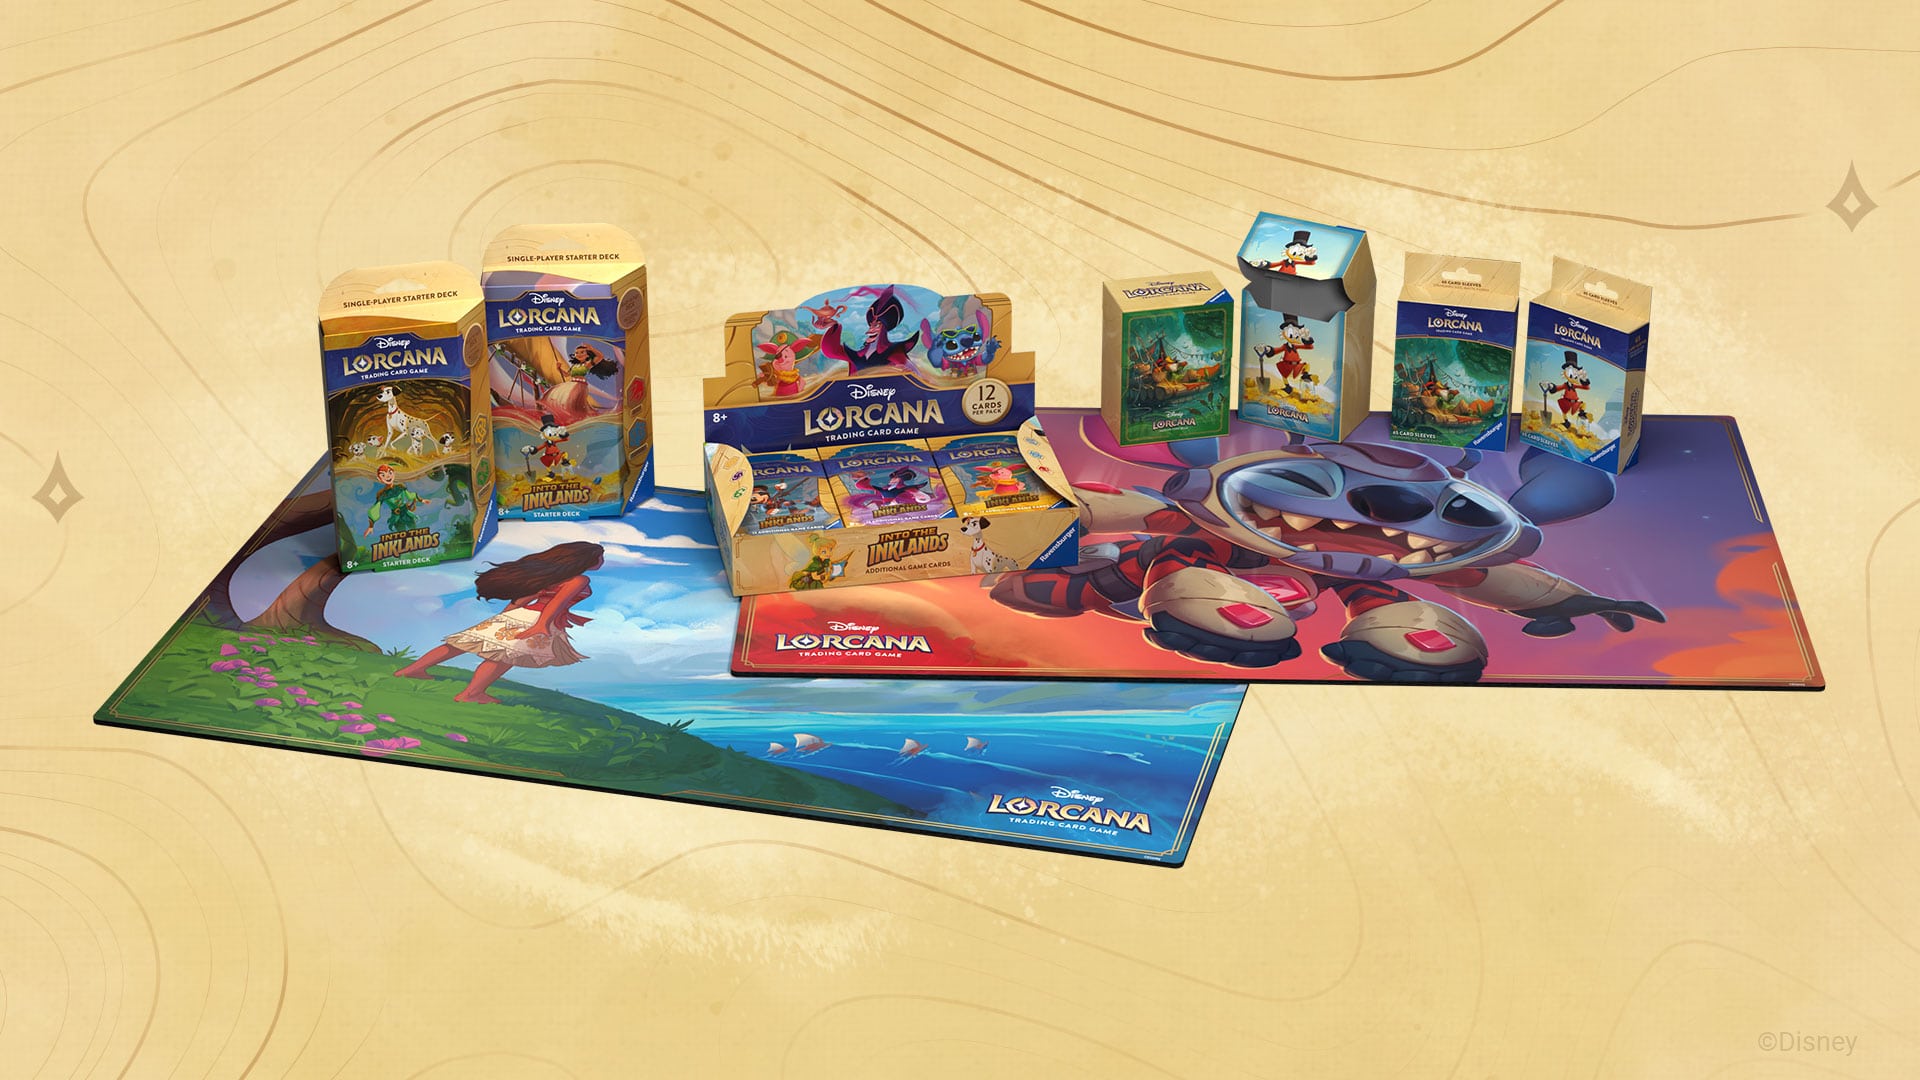 Disney Lorcana: The Next Big Trading Card Game?